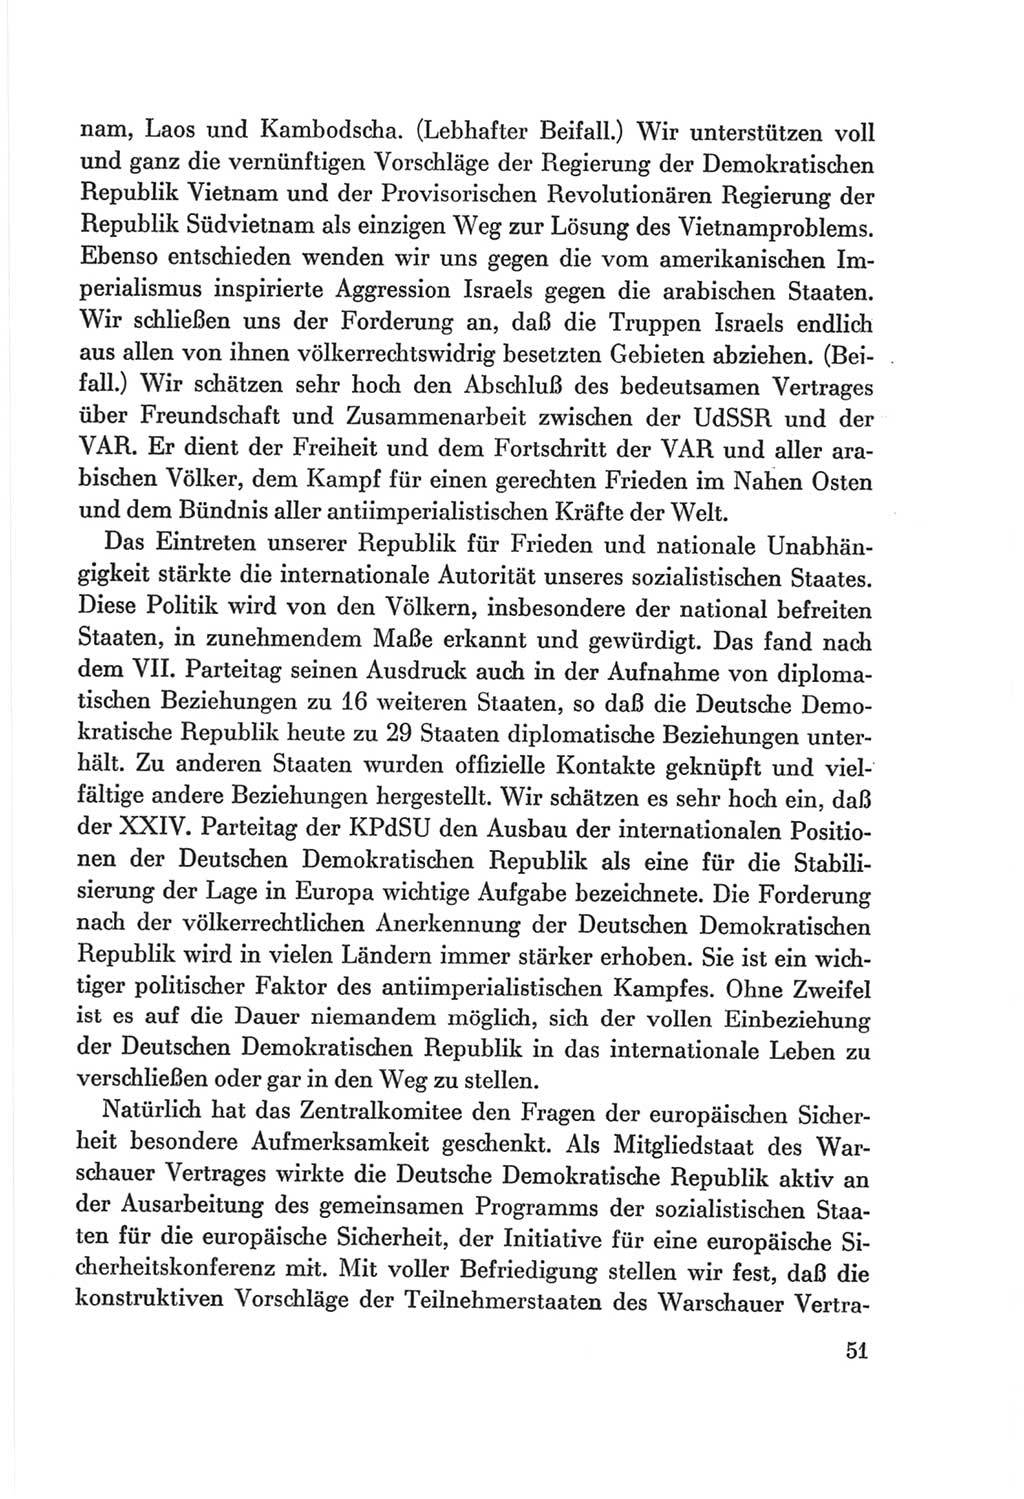 Protokoll der Verhandlungen des Ⅷ. Parteitages der Sozialistischen Einheitspartei Deutschlands (SED) [Deutsche Demokratische Republik (DDR)] 1971, Band 1, Seite 51 (Prot. Verh. Ⅷ. PT SED DDR 1971, Bd. 1, S. 51)